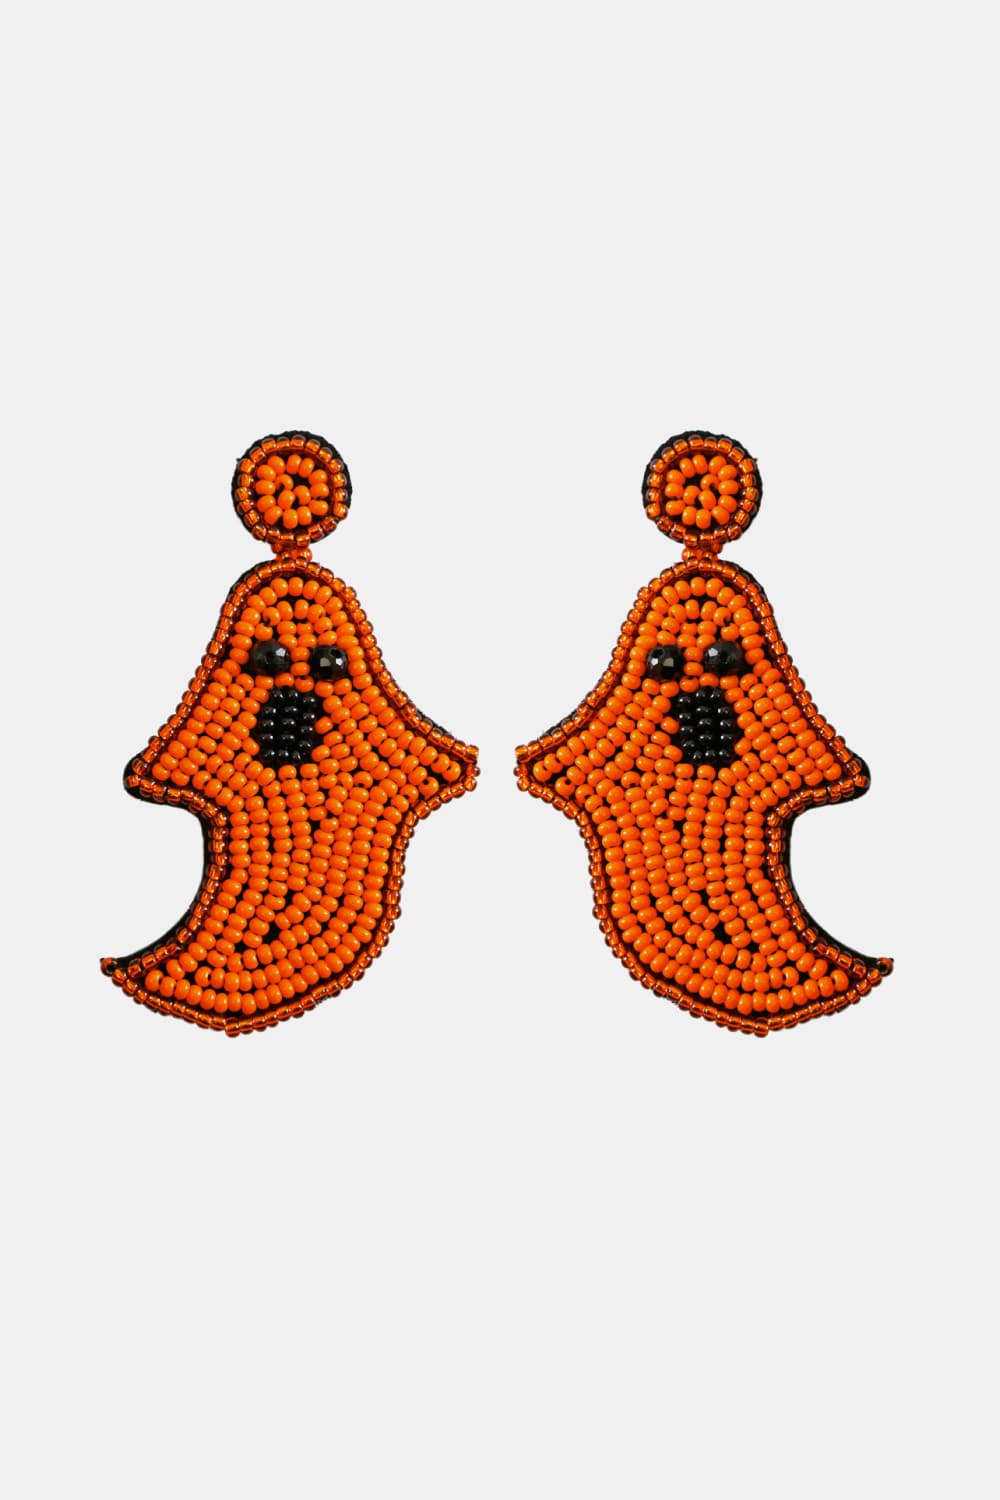 Ghost Shape Beaded Dangle Earrings - Orange / One Size - Women’s Jewelry - Earrings - 2 - 2024